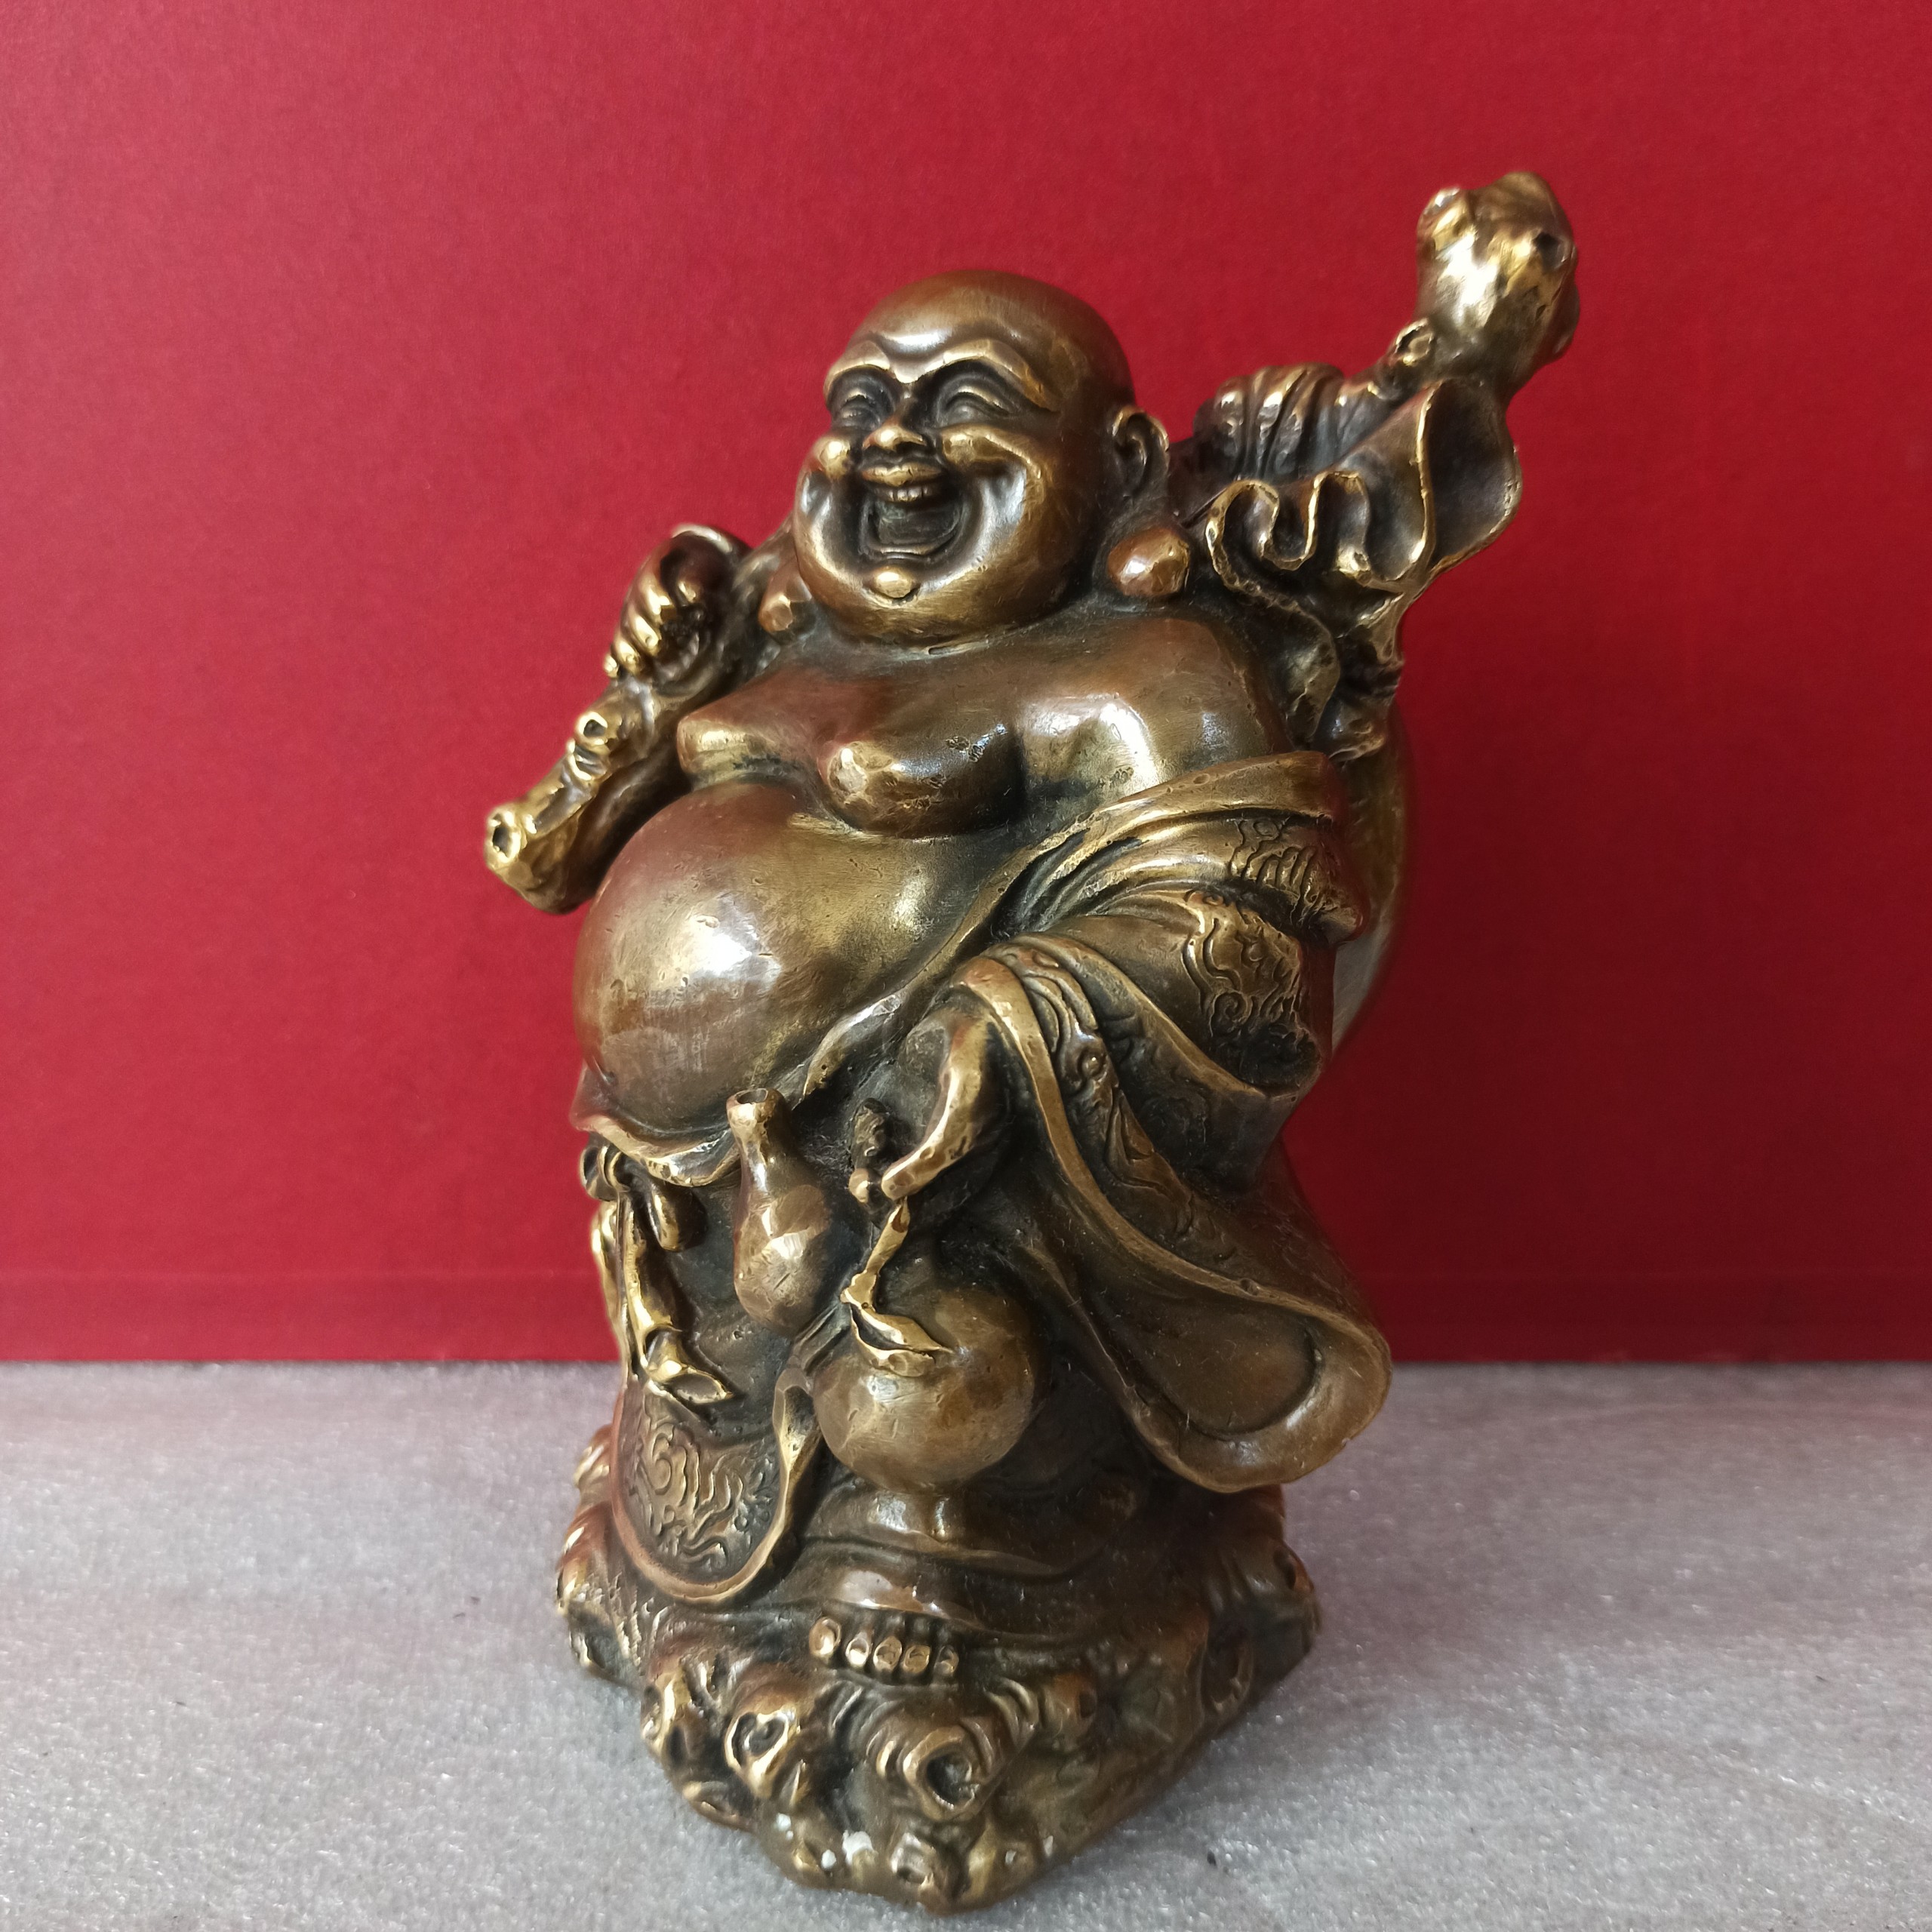 Hãy nhìn vào bức hình đầy tình nghĩa của Tượng Phật Di Lặc như một nguồn cảm hứng để đón nhận may mắn và hạnh phúc trong cuộc sống. Để được tiếp tục đắm chìm trong sự thanh thản và yên bình mà tượng vẫn truyền tải.